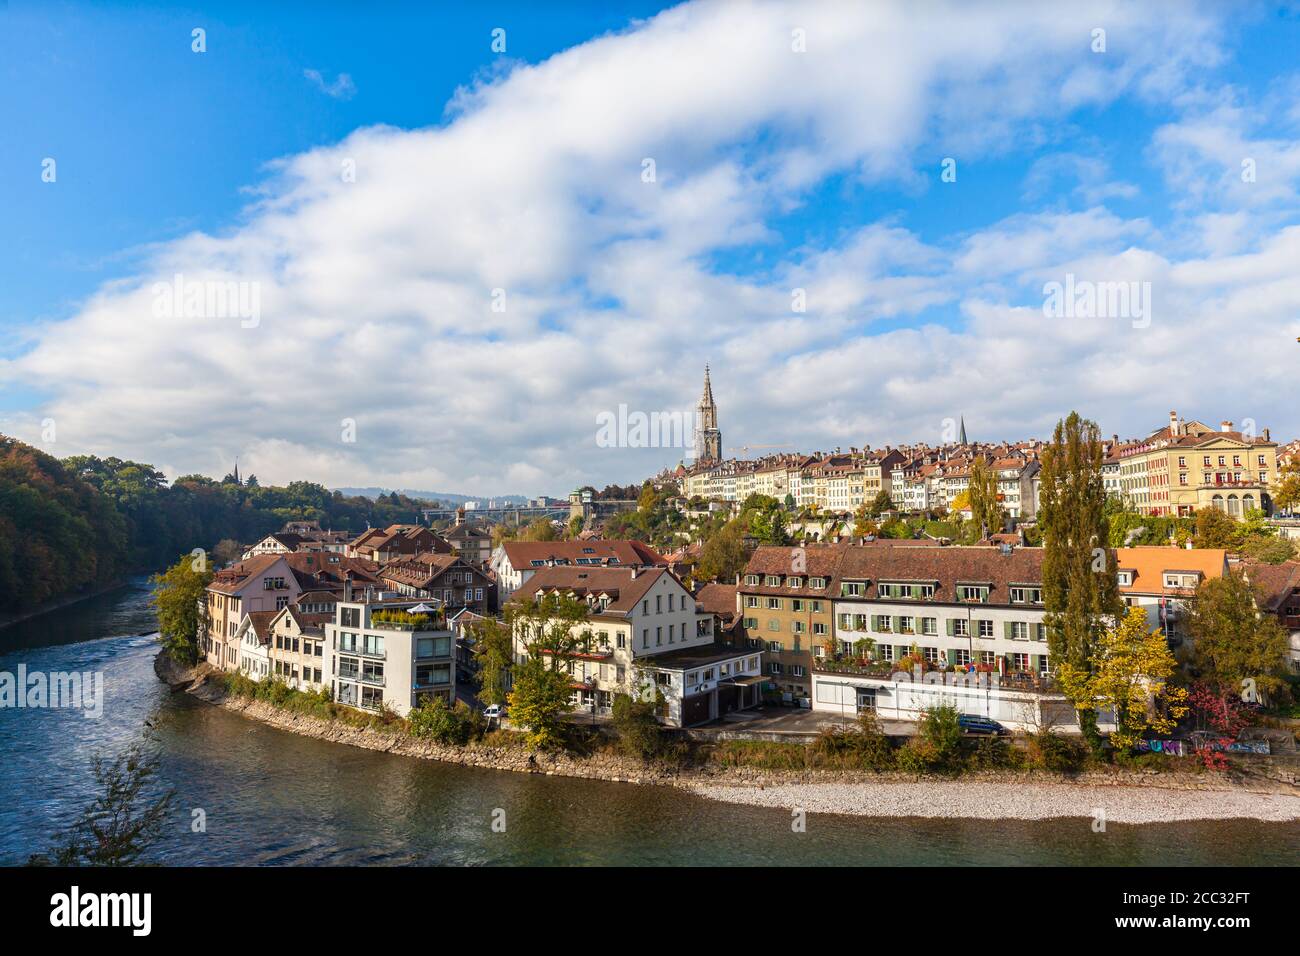 Vue imprenable sur la vieille ville de Berne avec la cathédrale de Berne Minster (Münster) et la rivière Aare qui coule autour, le jour d'automne ensoleillé avec ciel bleu et le clou Banque D'Images